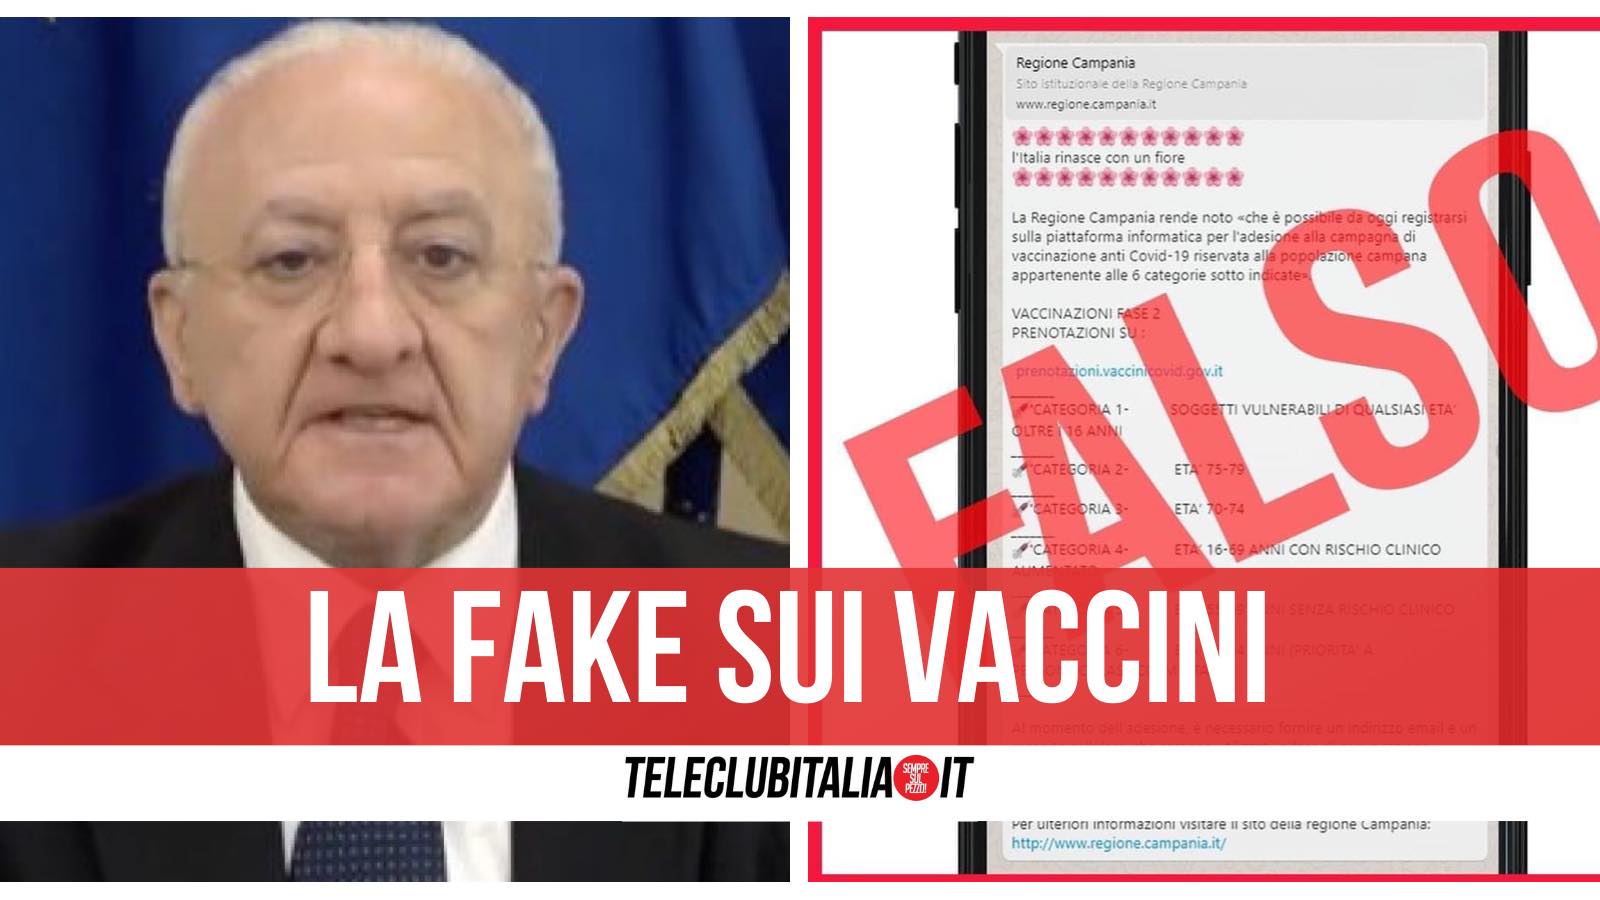 fake news vaccinazioni prenotazioni campania